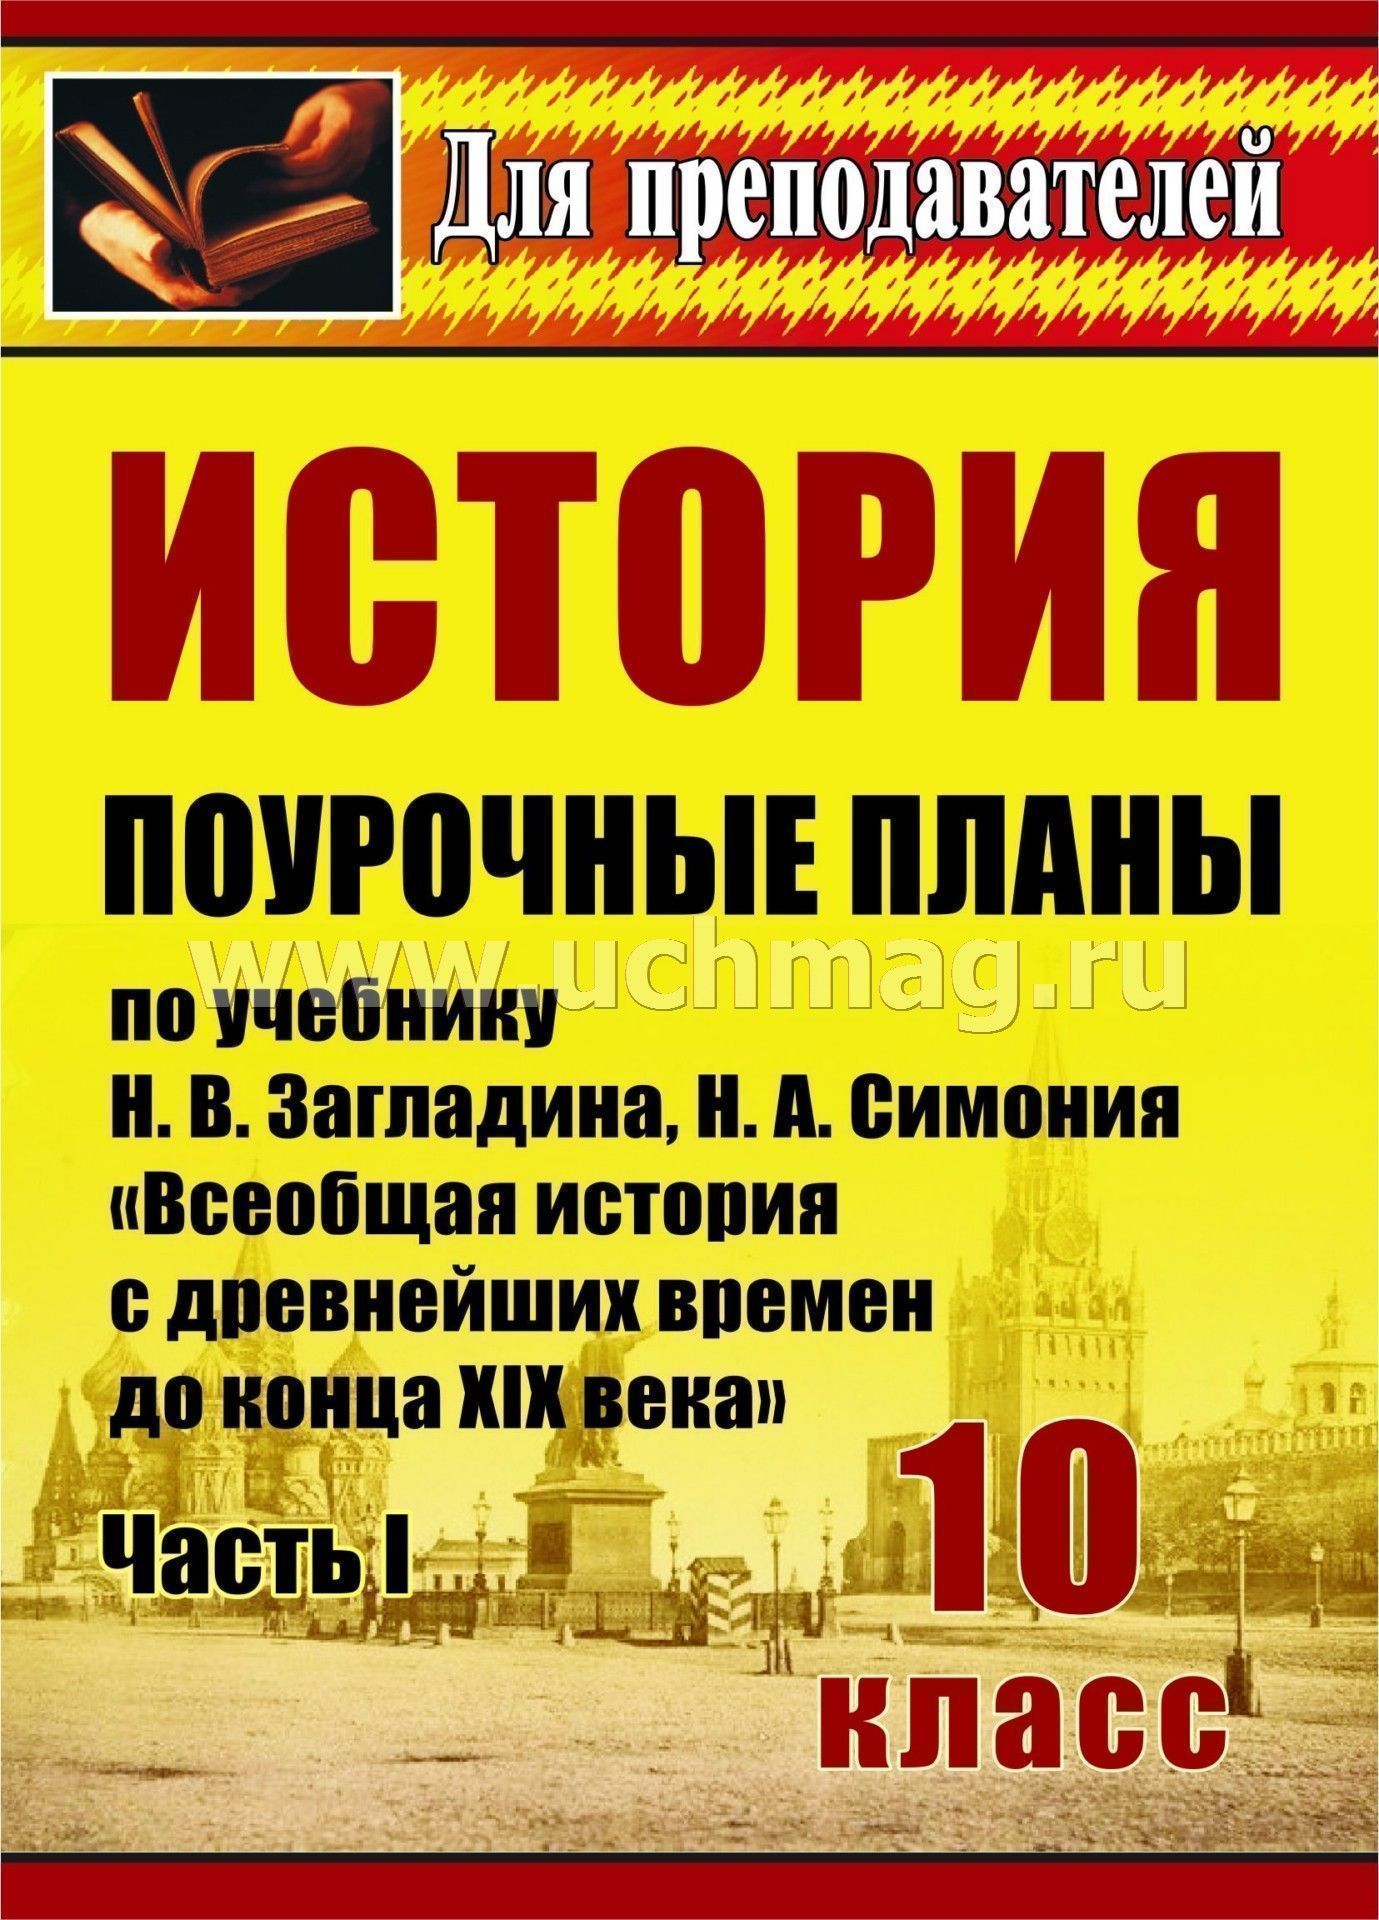 Учебник история россии и мира 10 класс загладинcrfxfnm tcgkfnyj